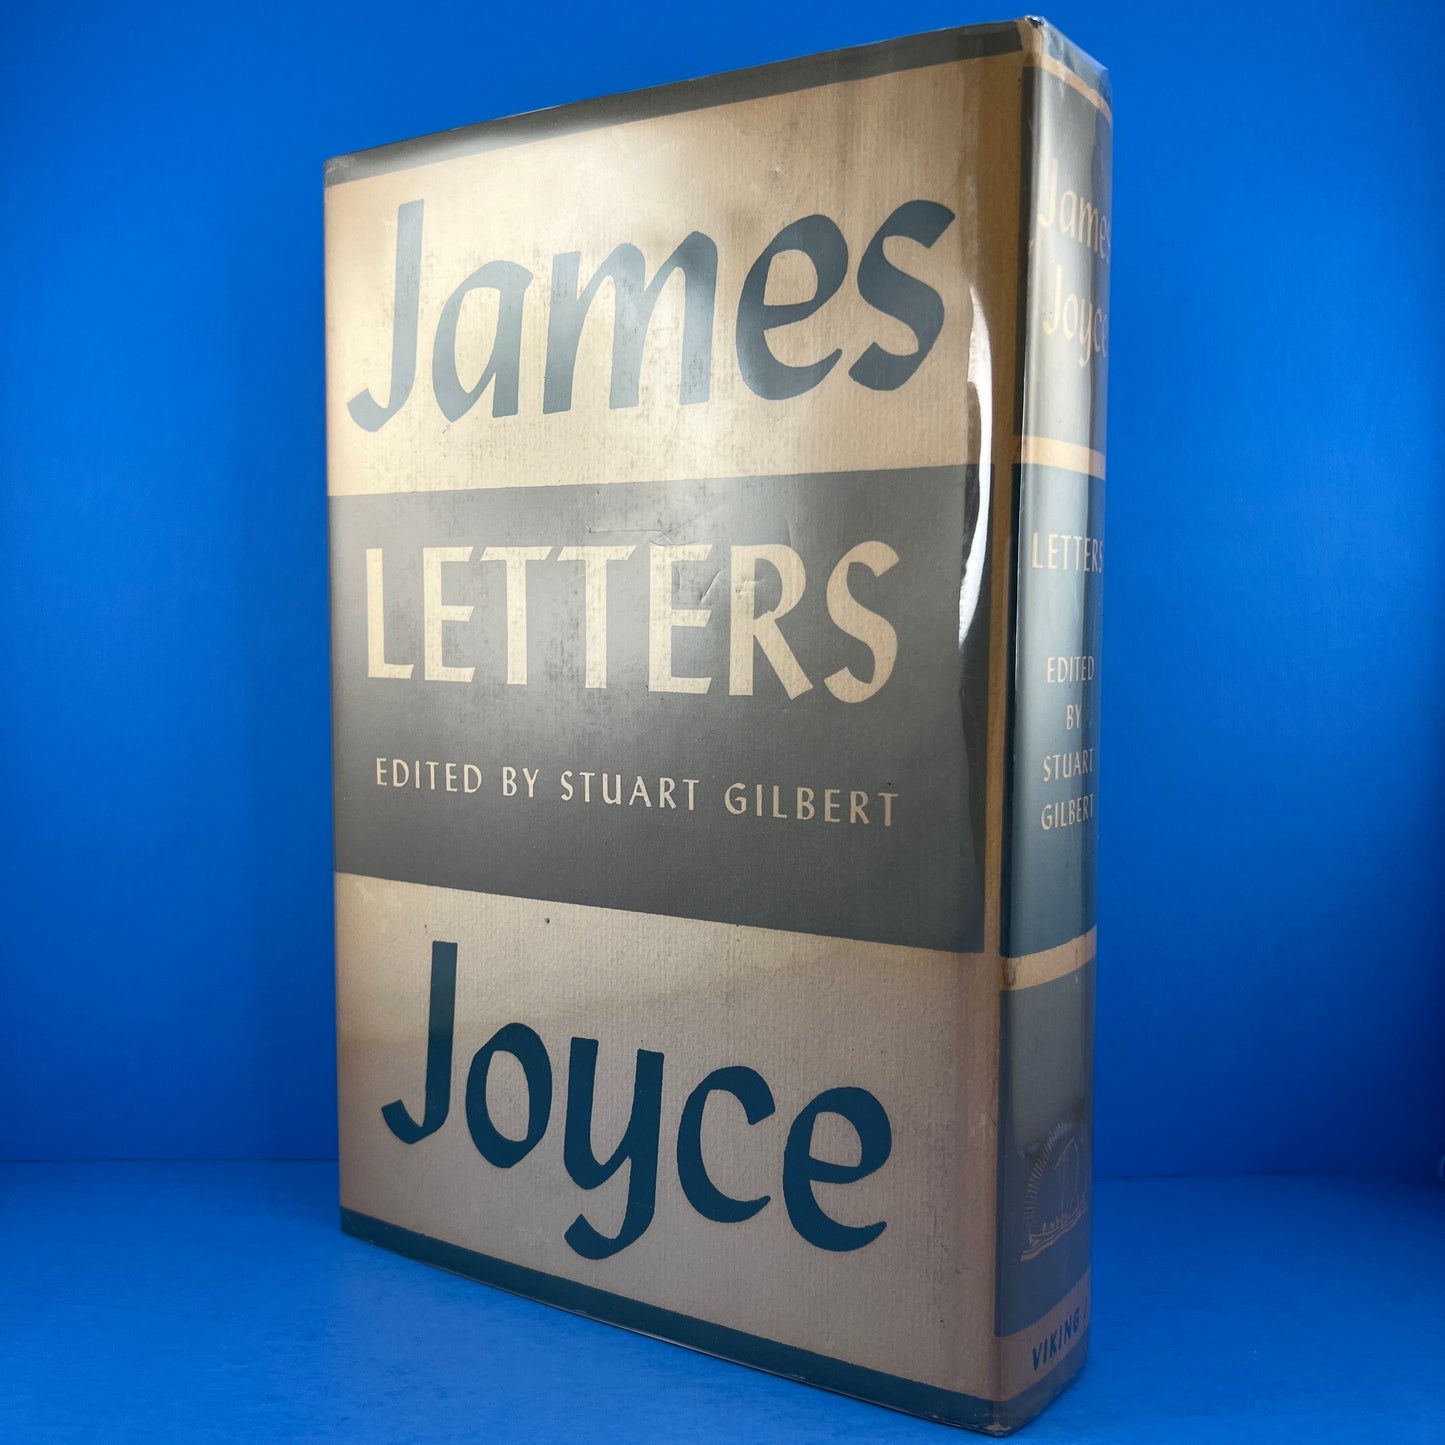 Letters of James Joyce